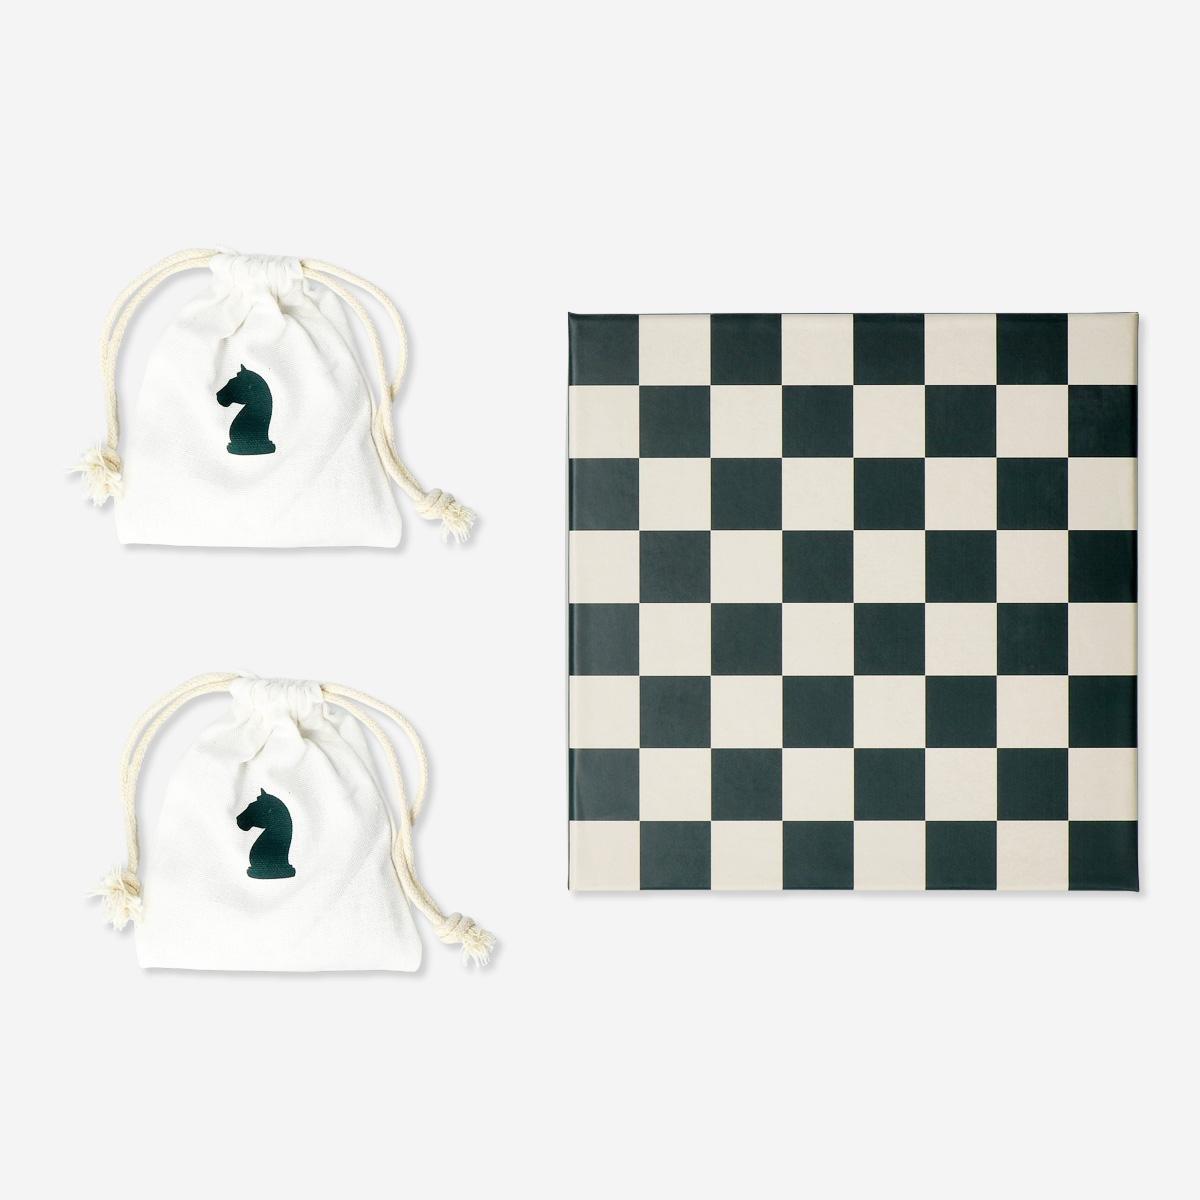 Multicolour chess